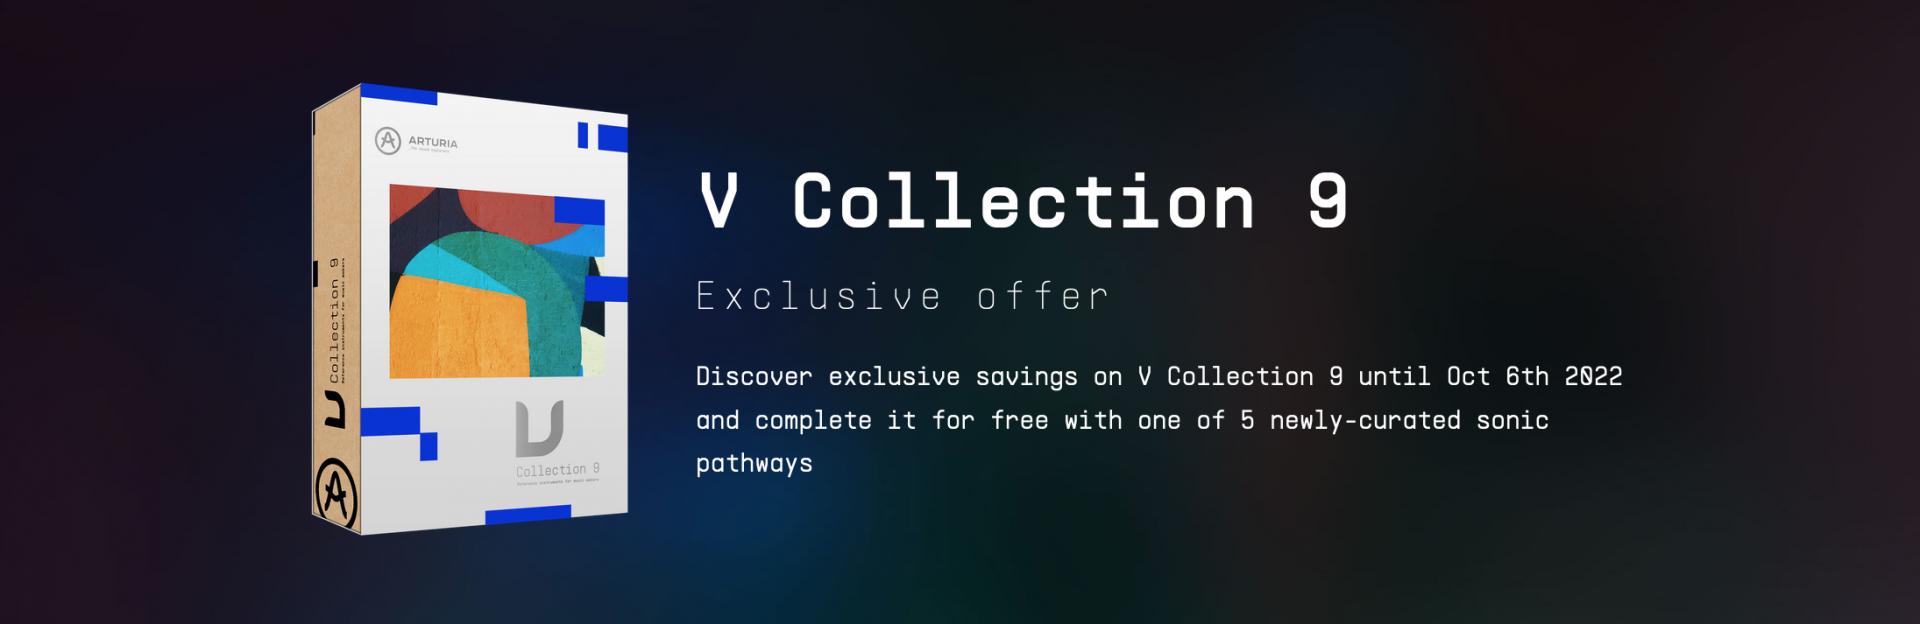 v_collection.png.jpg